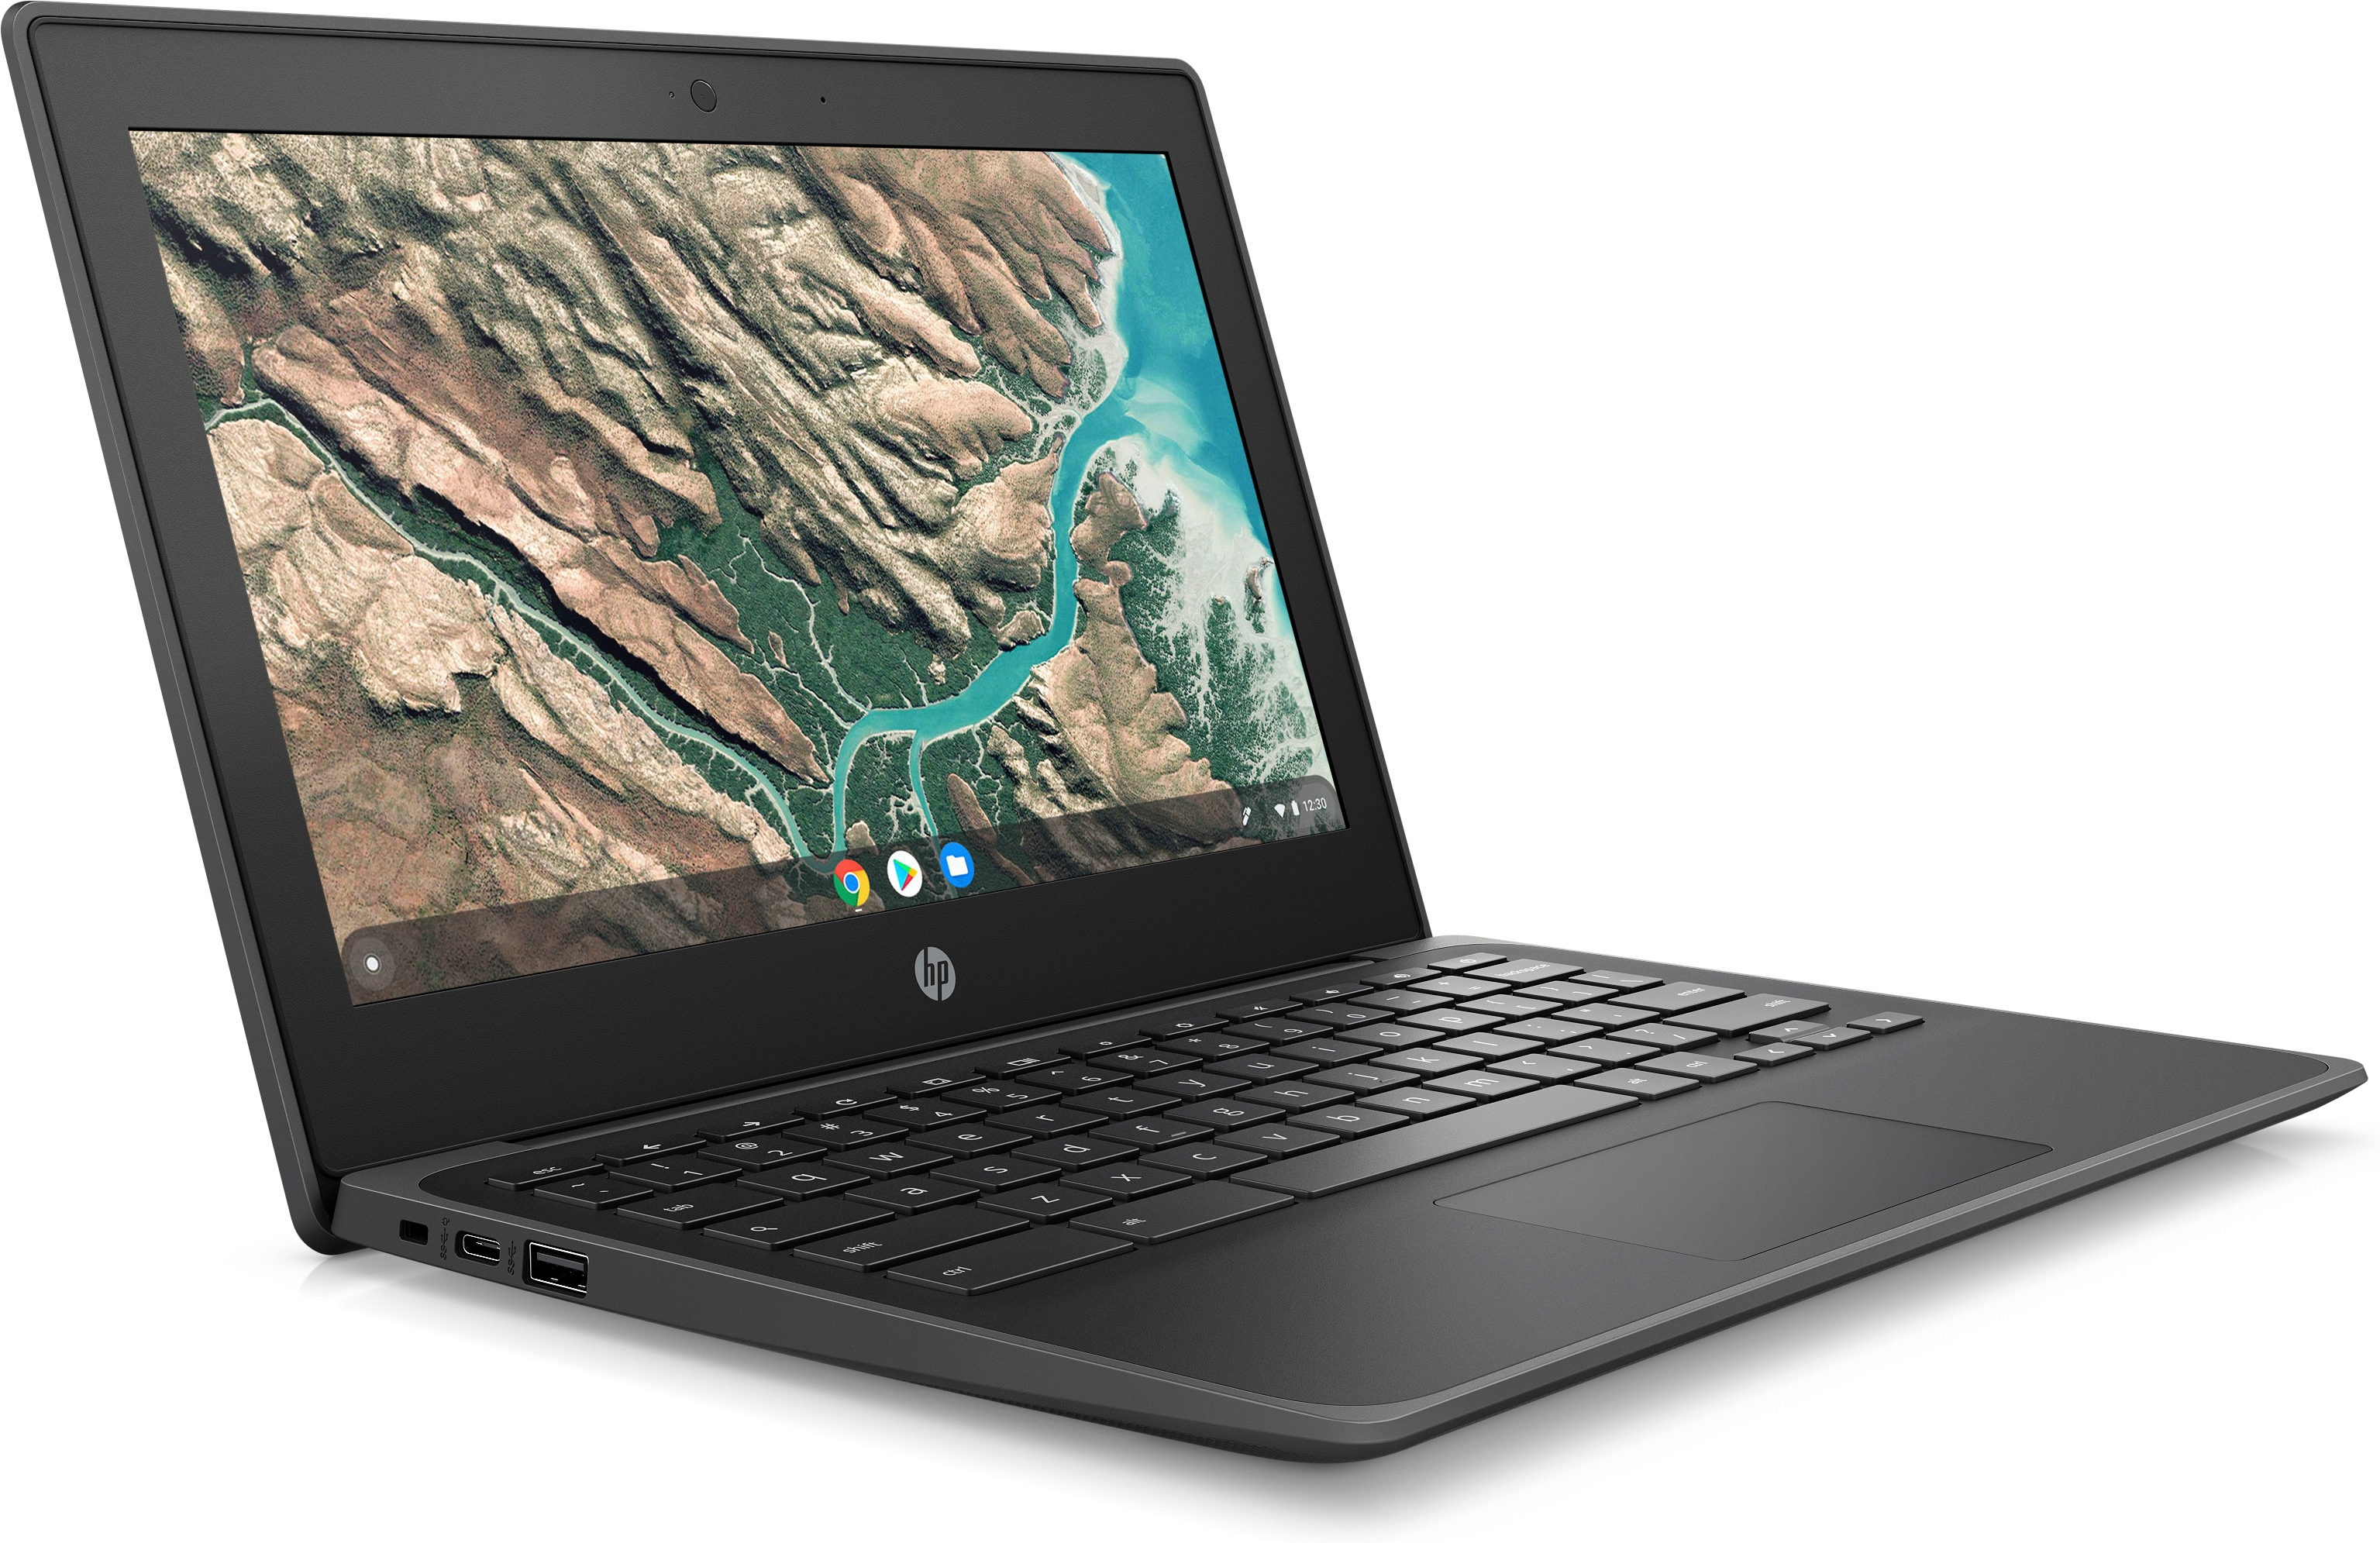 Notebook HP Chromebook 11 G8 EE N4020 29,5 cm (11.6